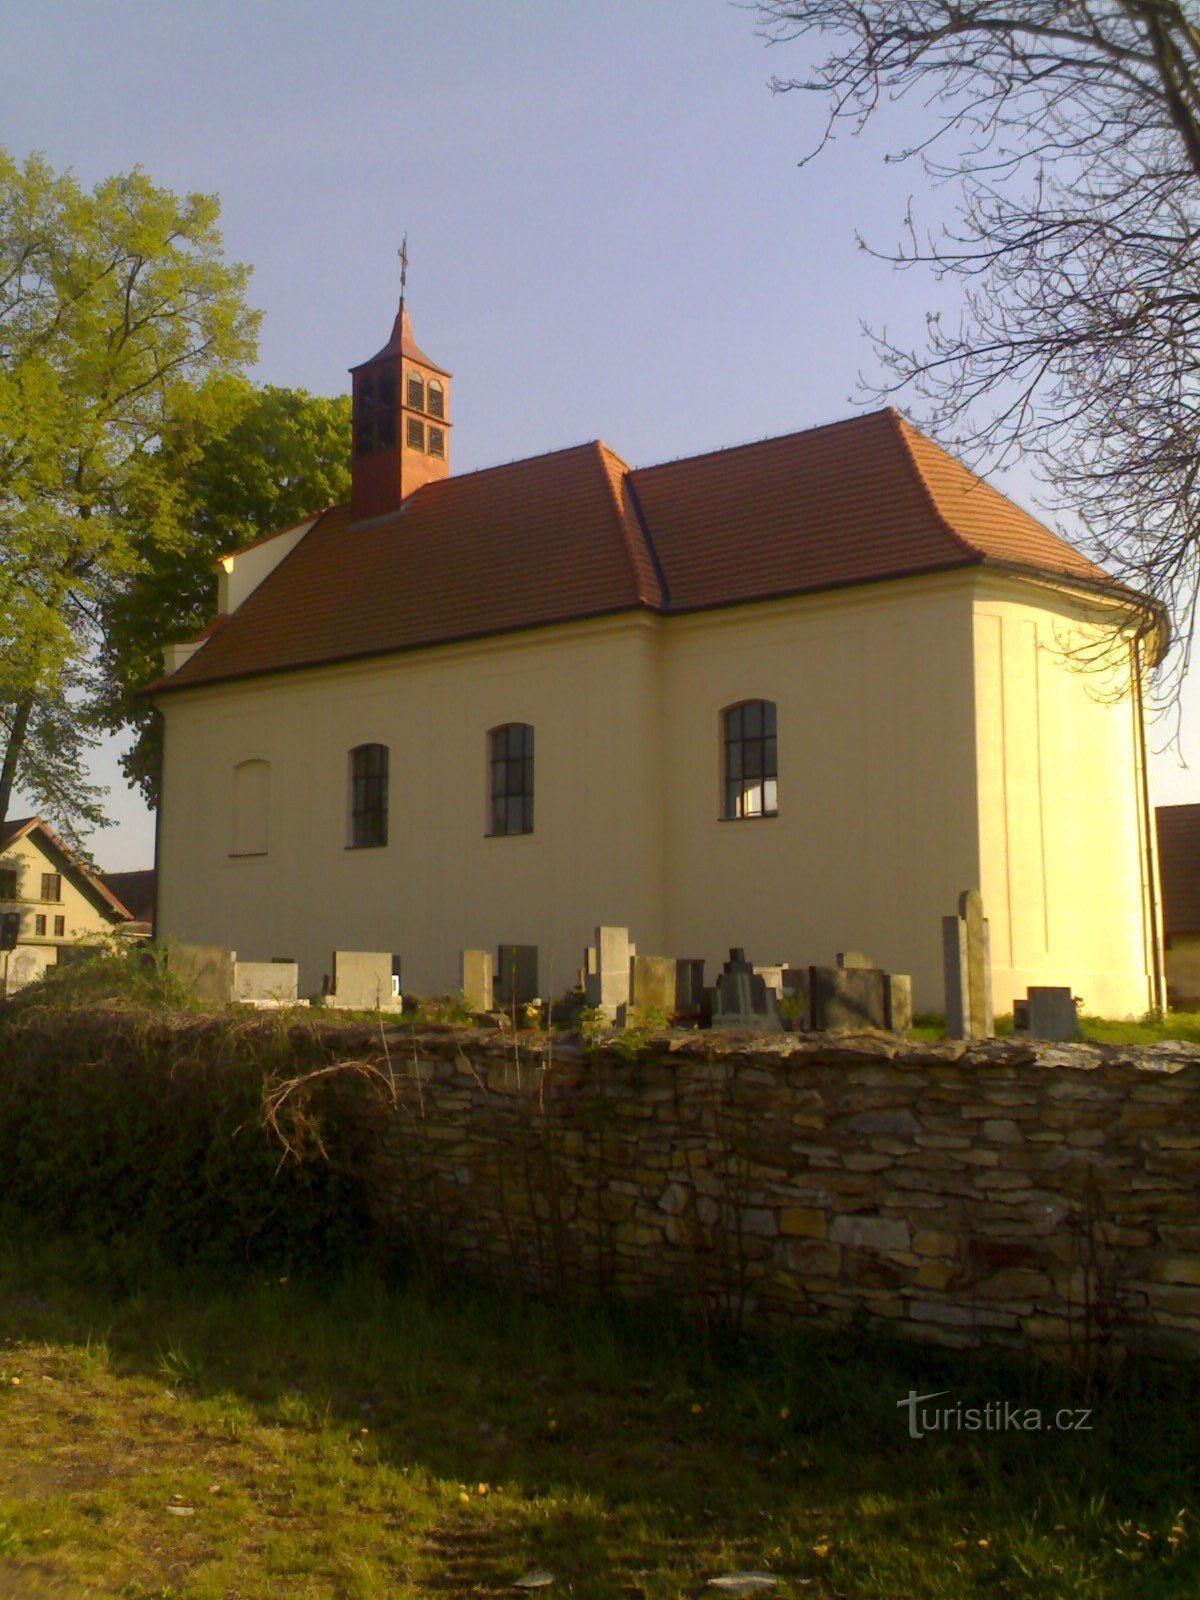 Krňovice - nhà thờ